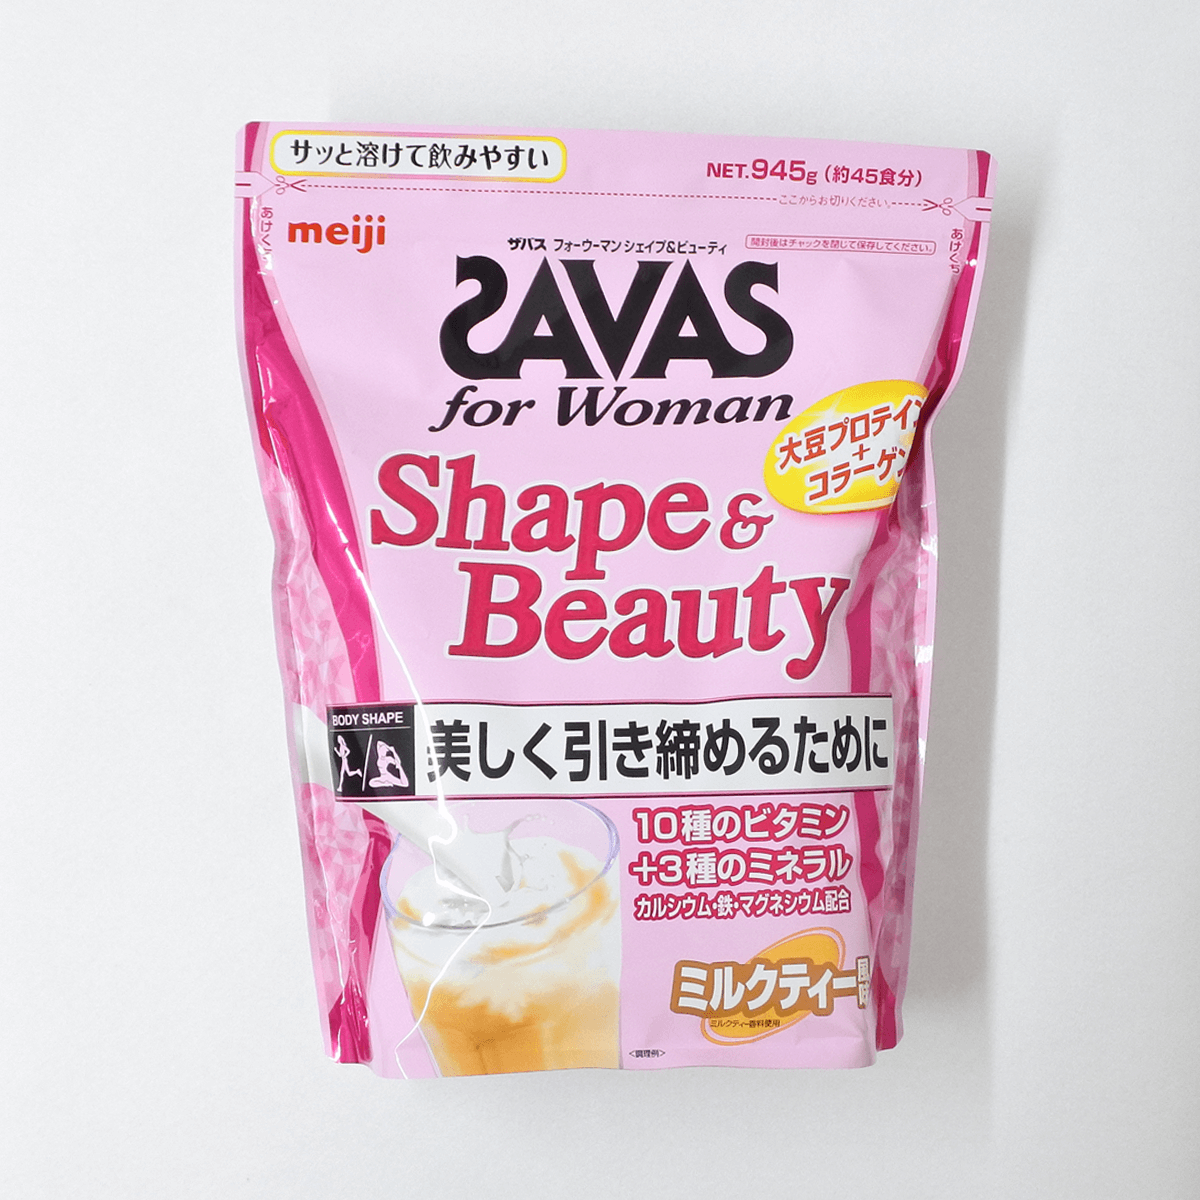 明治 SAVAS 女性专用美体增肌大豆蛋白粉(奶茶口味) 900g 约45餐份